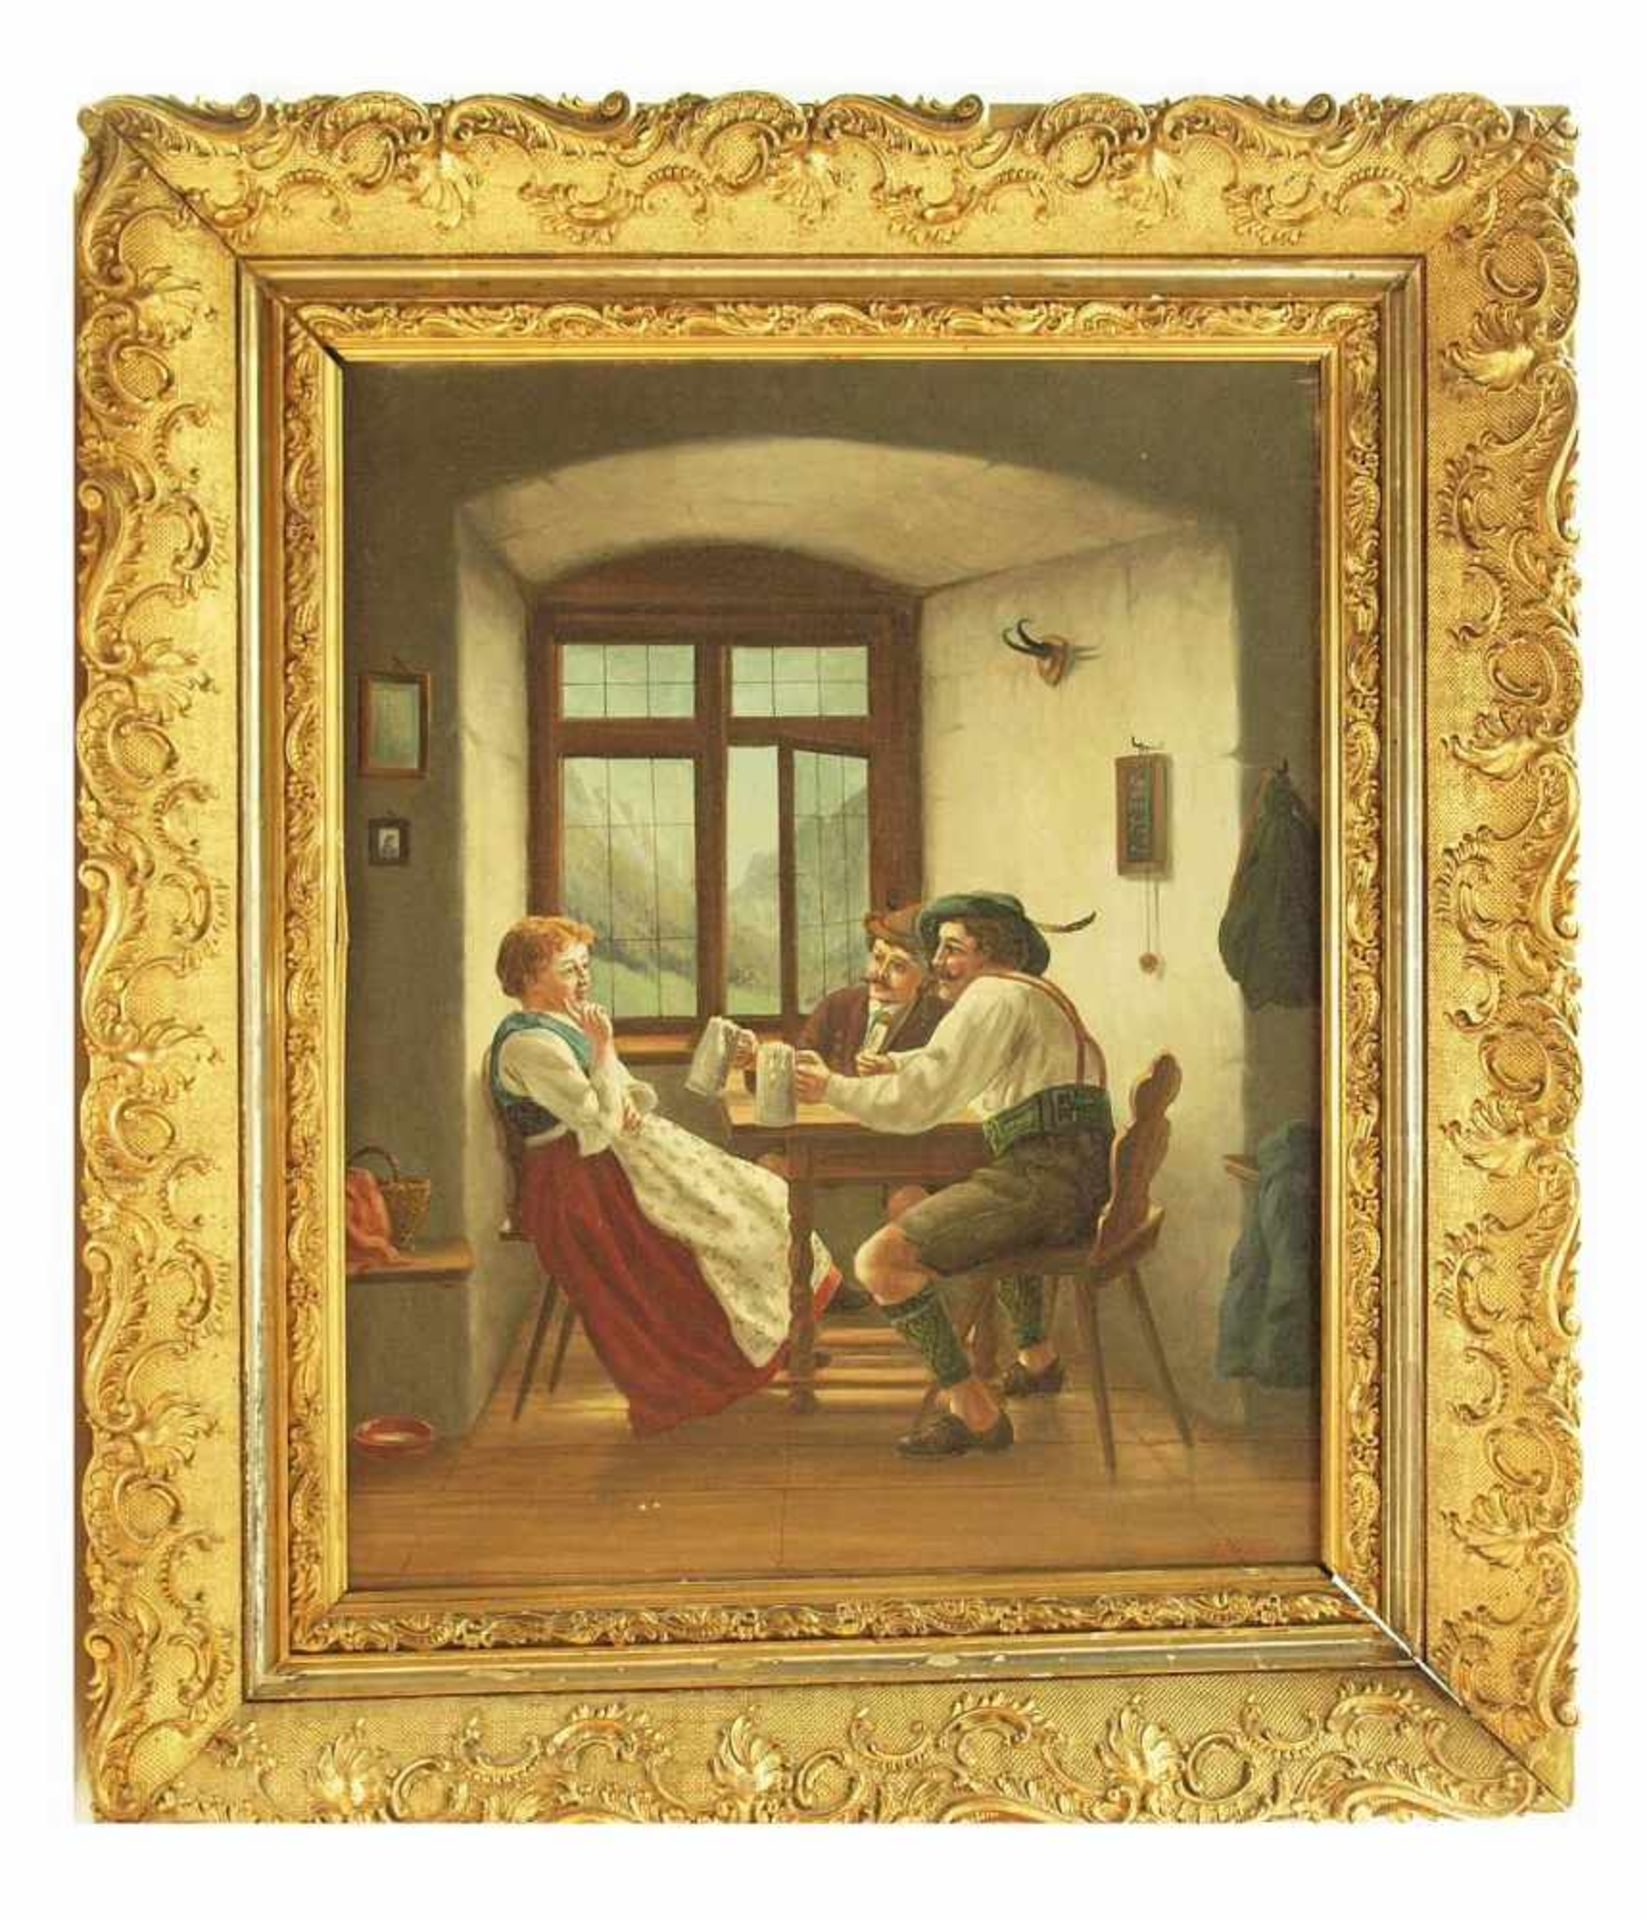 PFISTERER, A. PFISTERER, A. Ende 19. Jahrhundert. Stubeninterieur, zwei Burschen mit junger Frau - Image 3 of 6